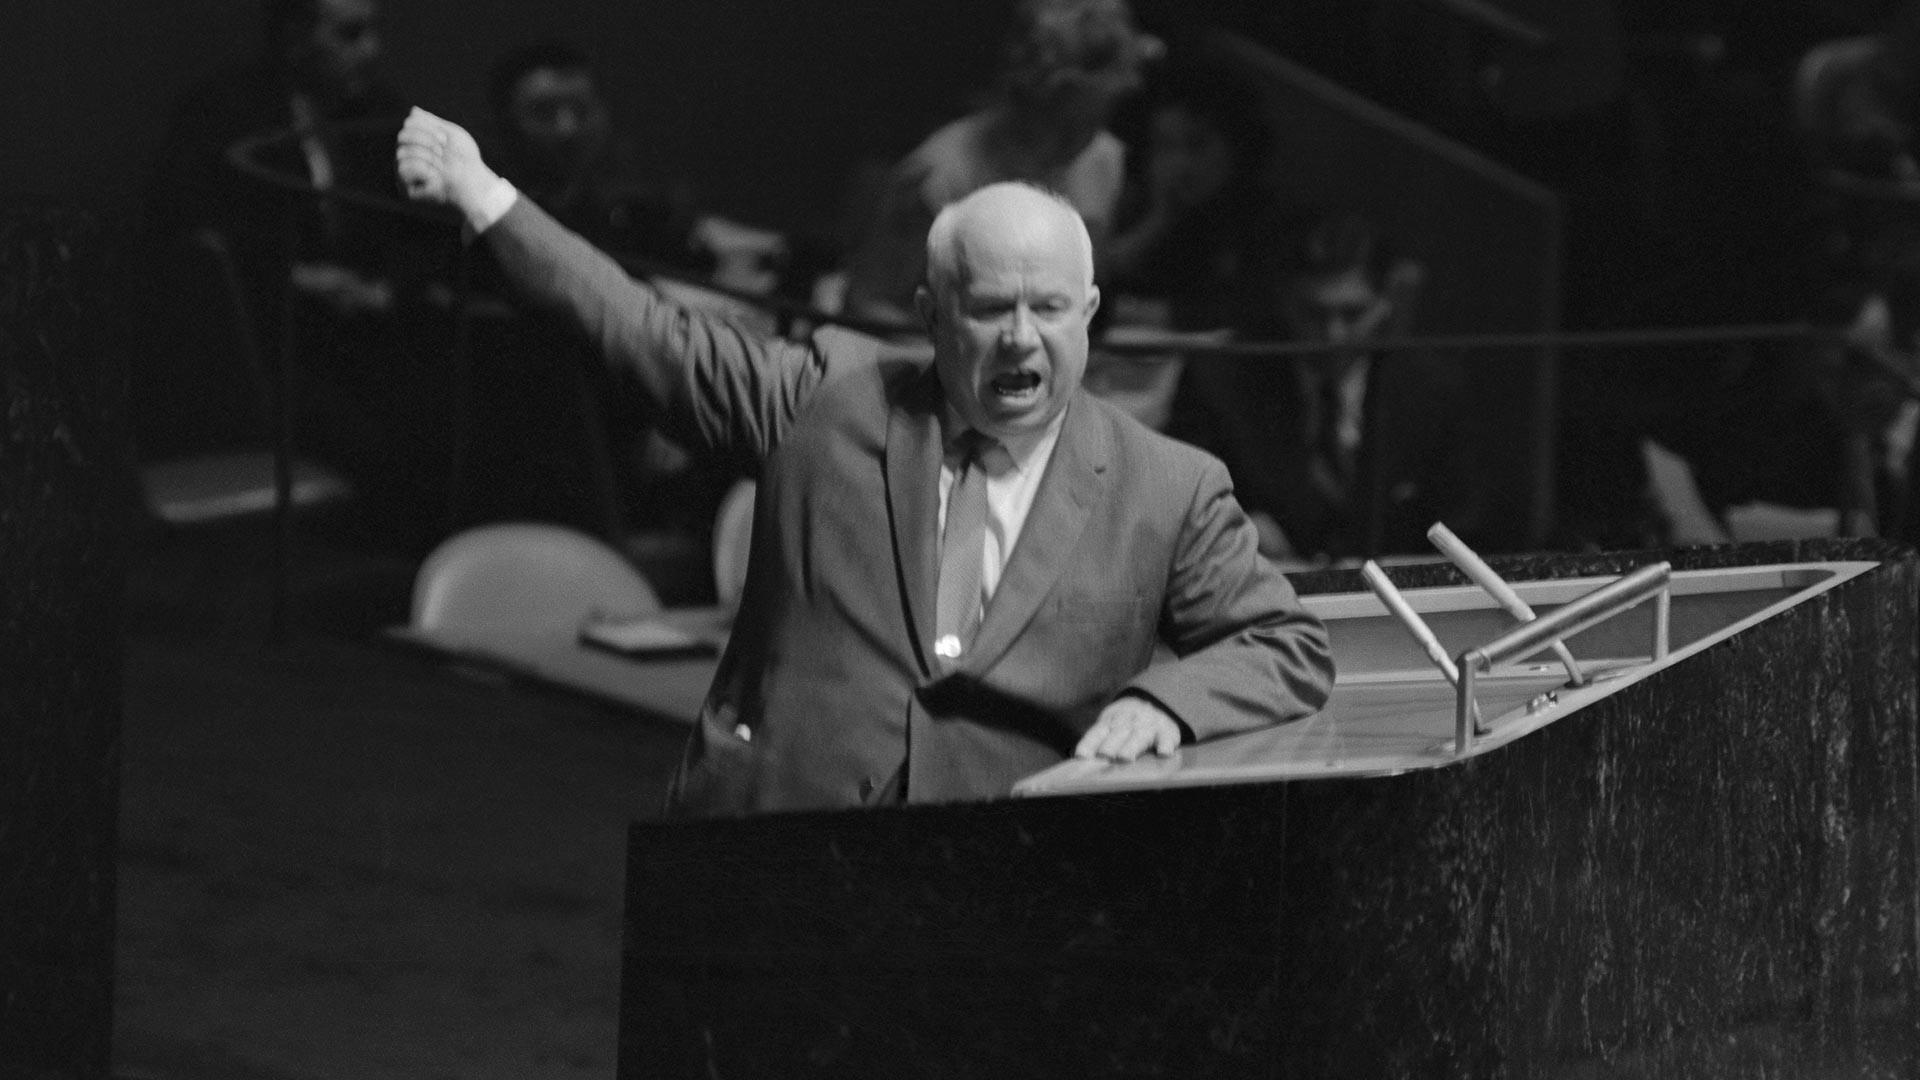 Совјетски лидер Никита Хрушчов гестикулира и виче за говорницом Генералне скупштине УН, тражећи од председавајућег Фредерика Боланда да одузме реч Лоренцу Сумулонгу са Филипина који је предлагао да СССР изврши деколонизацију Источне Европе. Генерална скупштина УН, 12. октобар 1960.